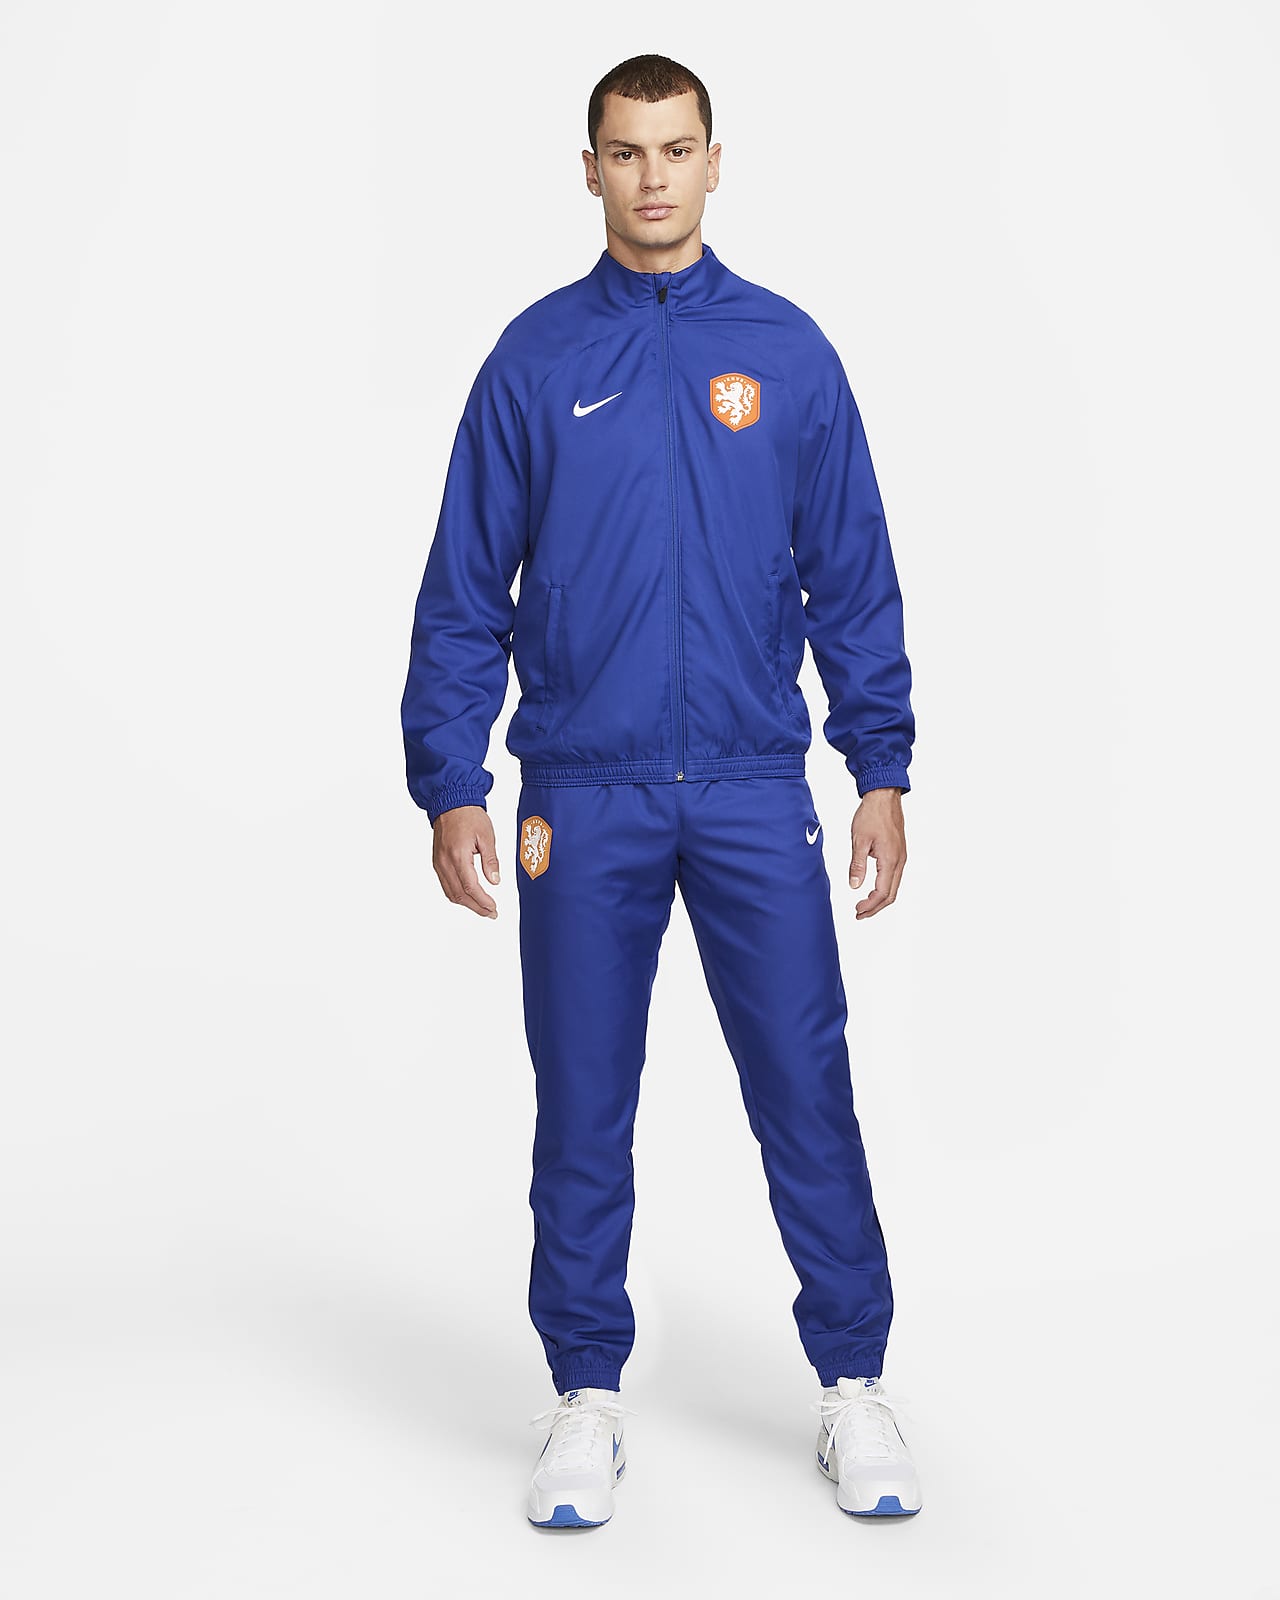 Niederlande Strike Nike Dri-FIT Web-Fußball-Trainingsanzug für Herren